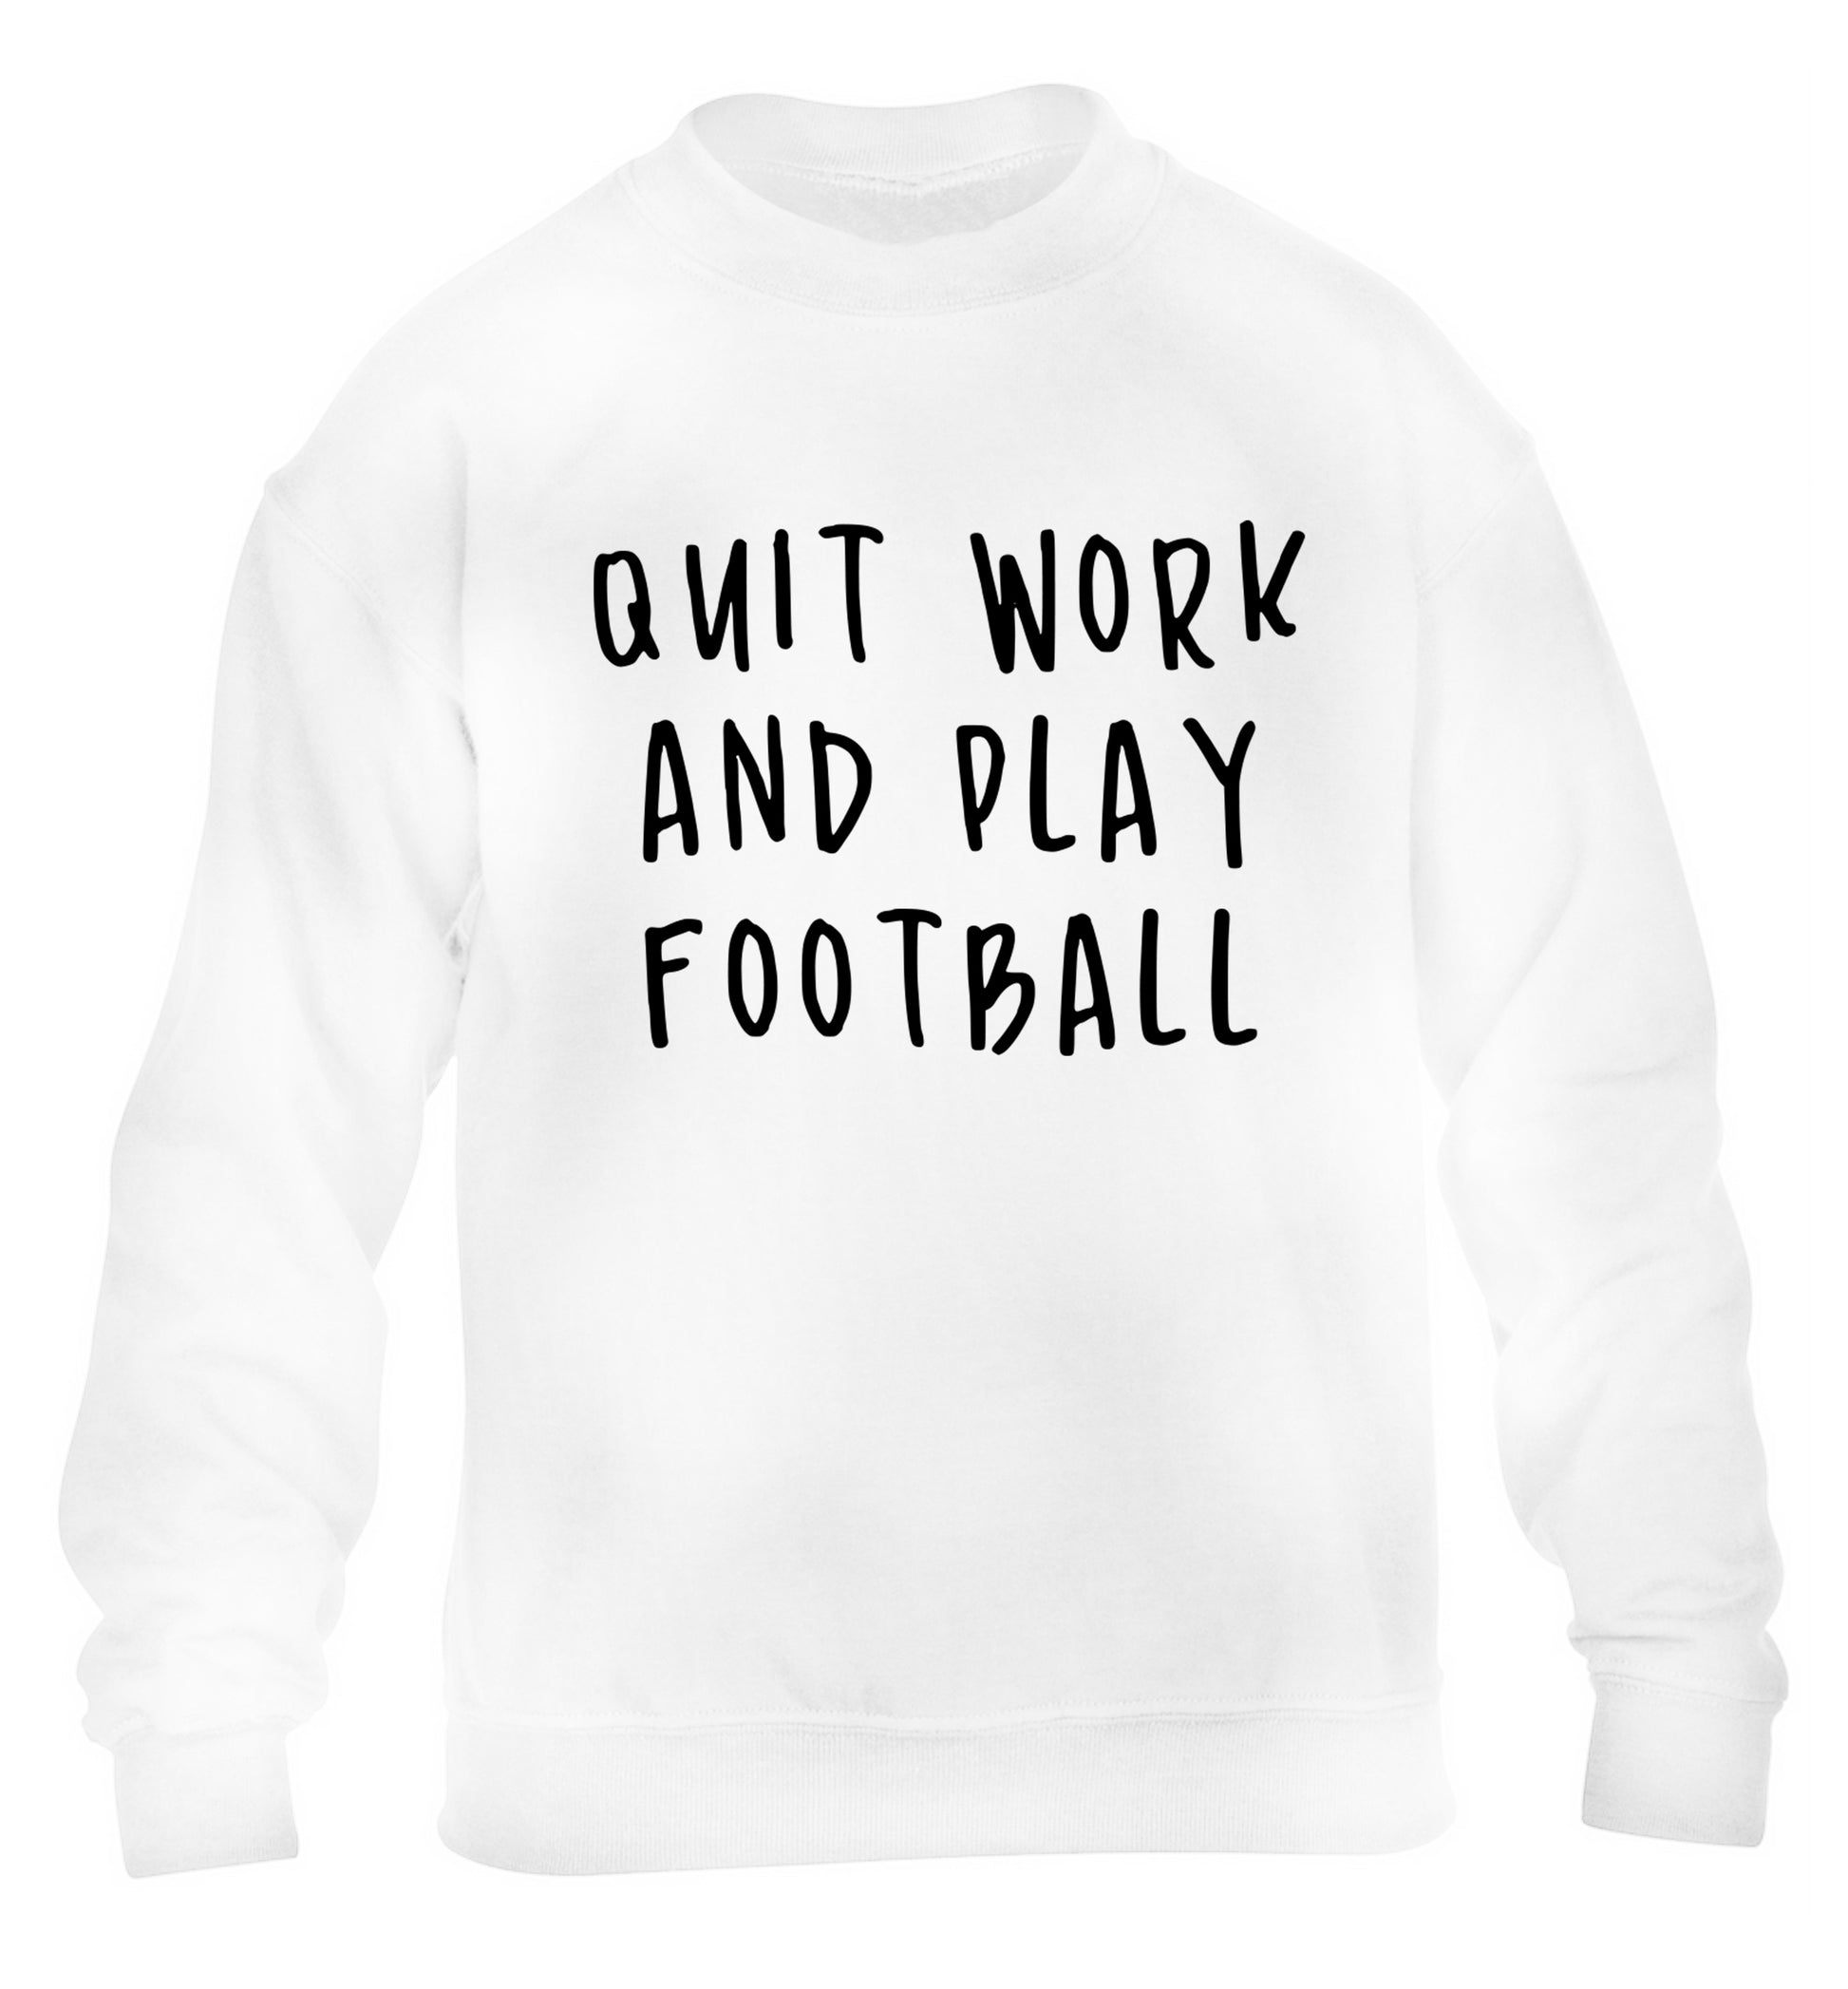 Quit work play football children's white sweater 12-14 Years